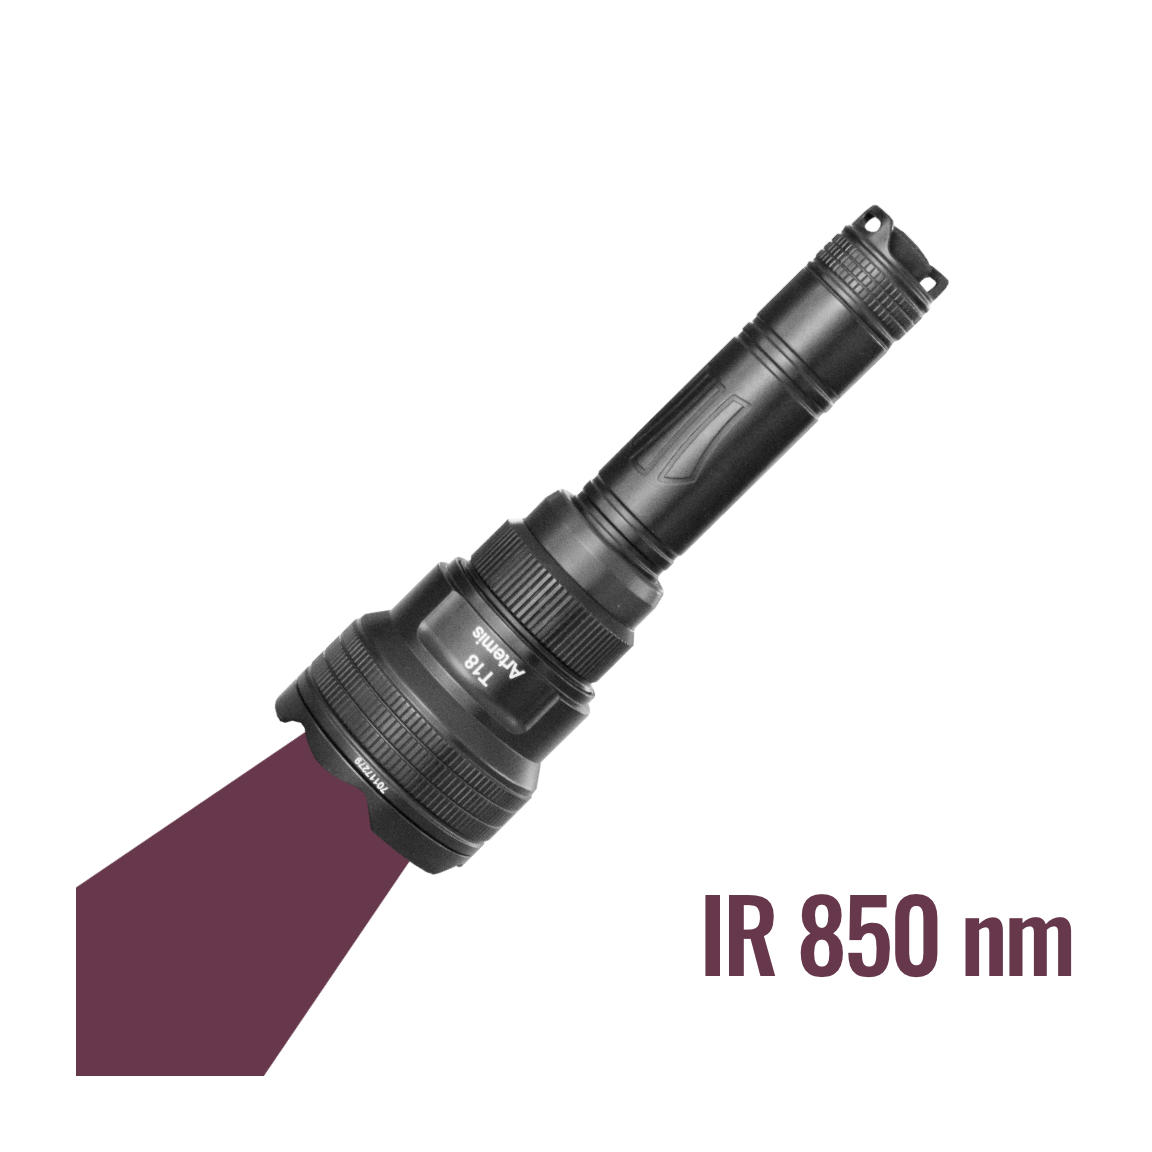 Brinyte T18 con luz infrarroja 850 nm (visible)